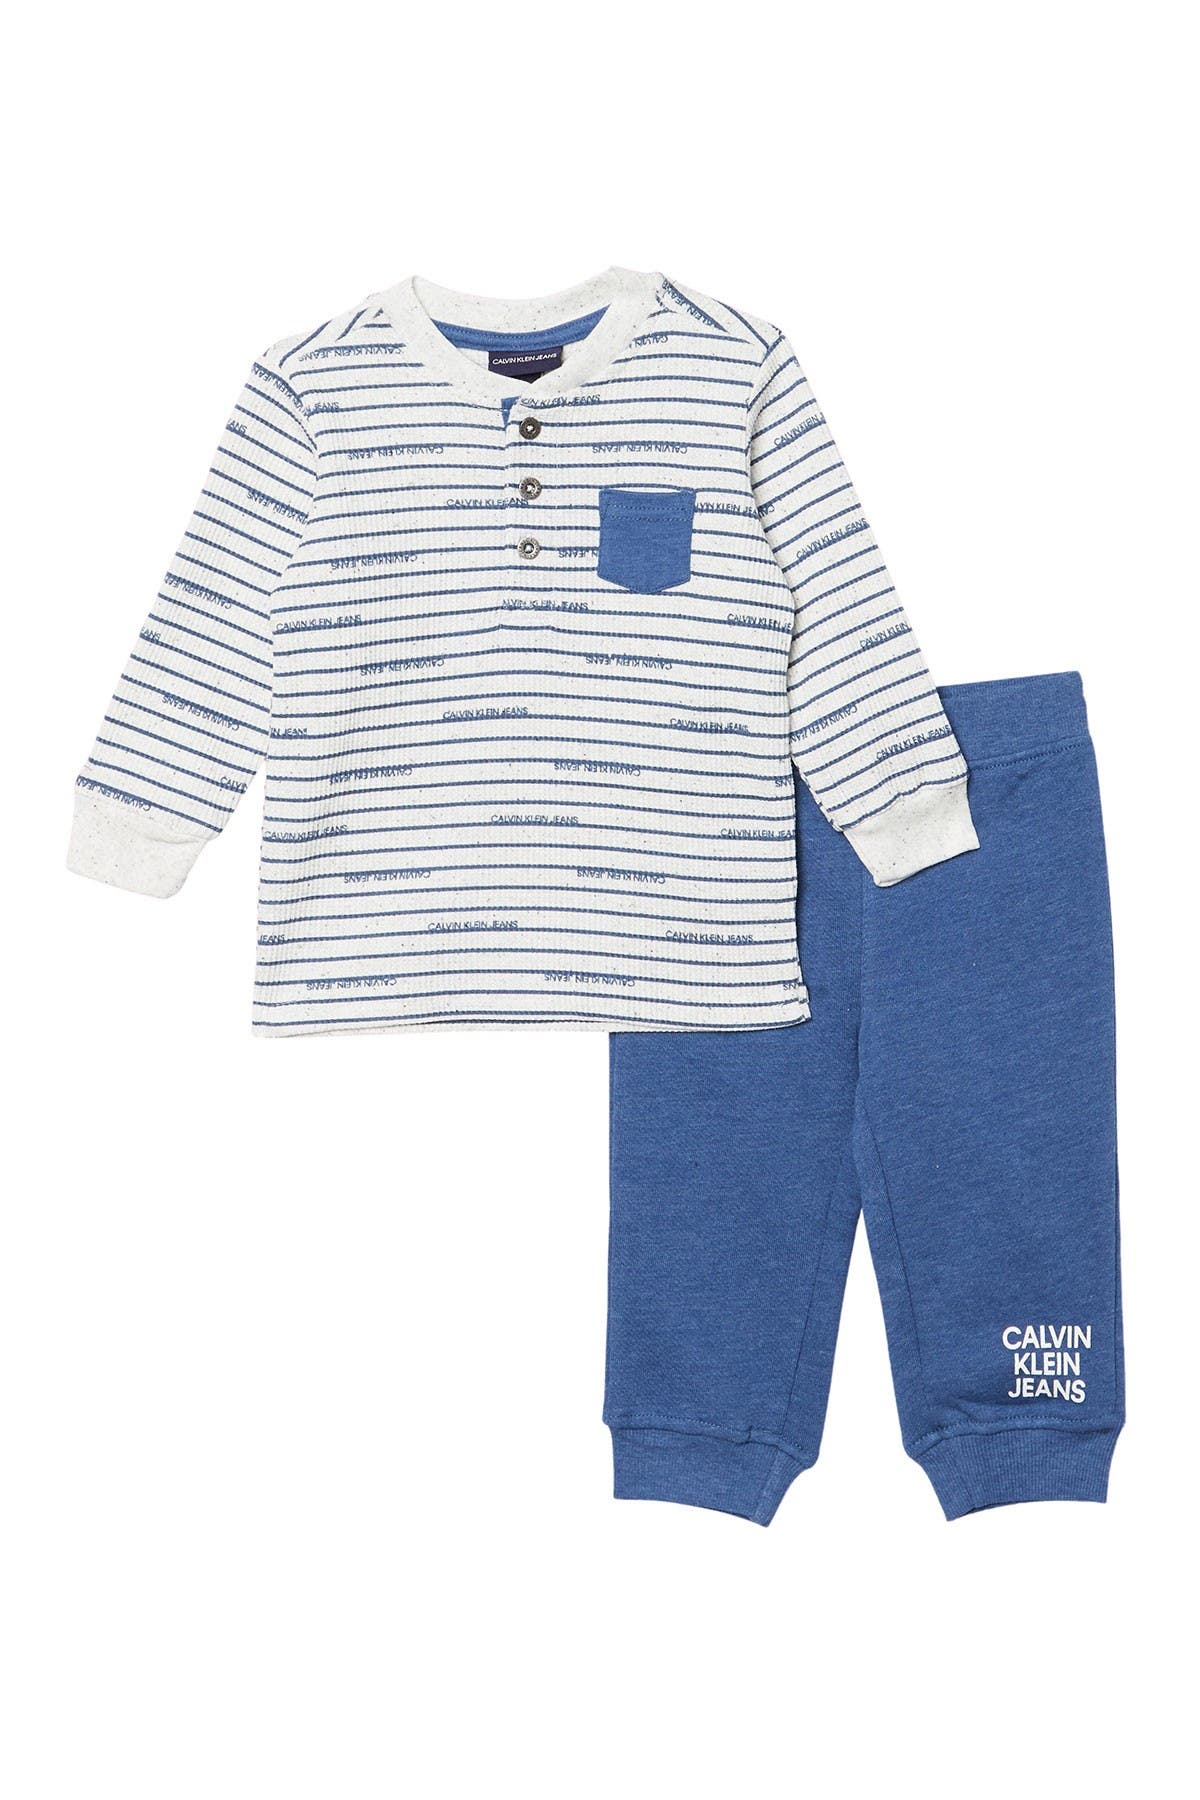 nordstrom newborn boy clothes